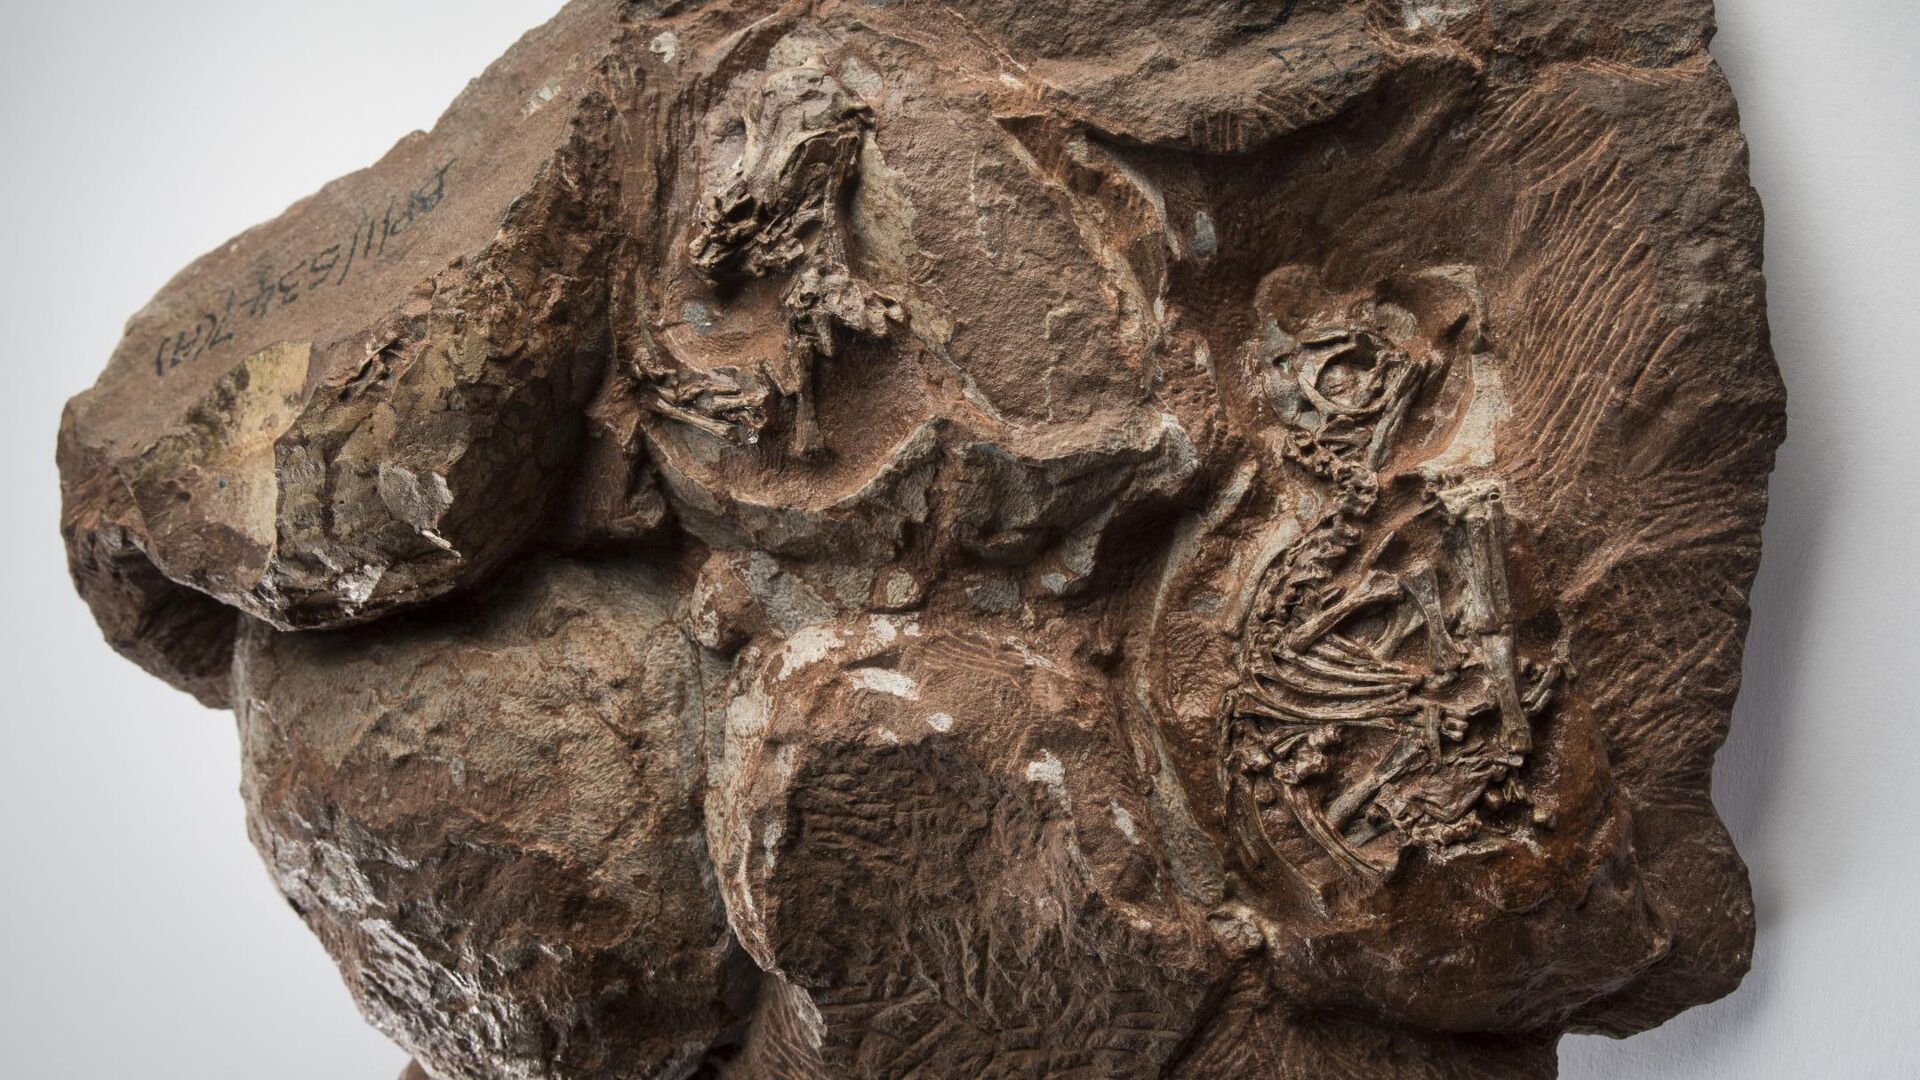 Одна из древнейших в мире находок эмбрионов динозавра возрастом около 200 миллионов лет, обнаруженная в 1976 году в Национальном парке Голден Гейт, Южная Африка - РИА Новости, 1920, 09.04.2020